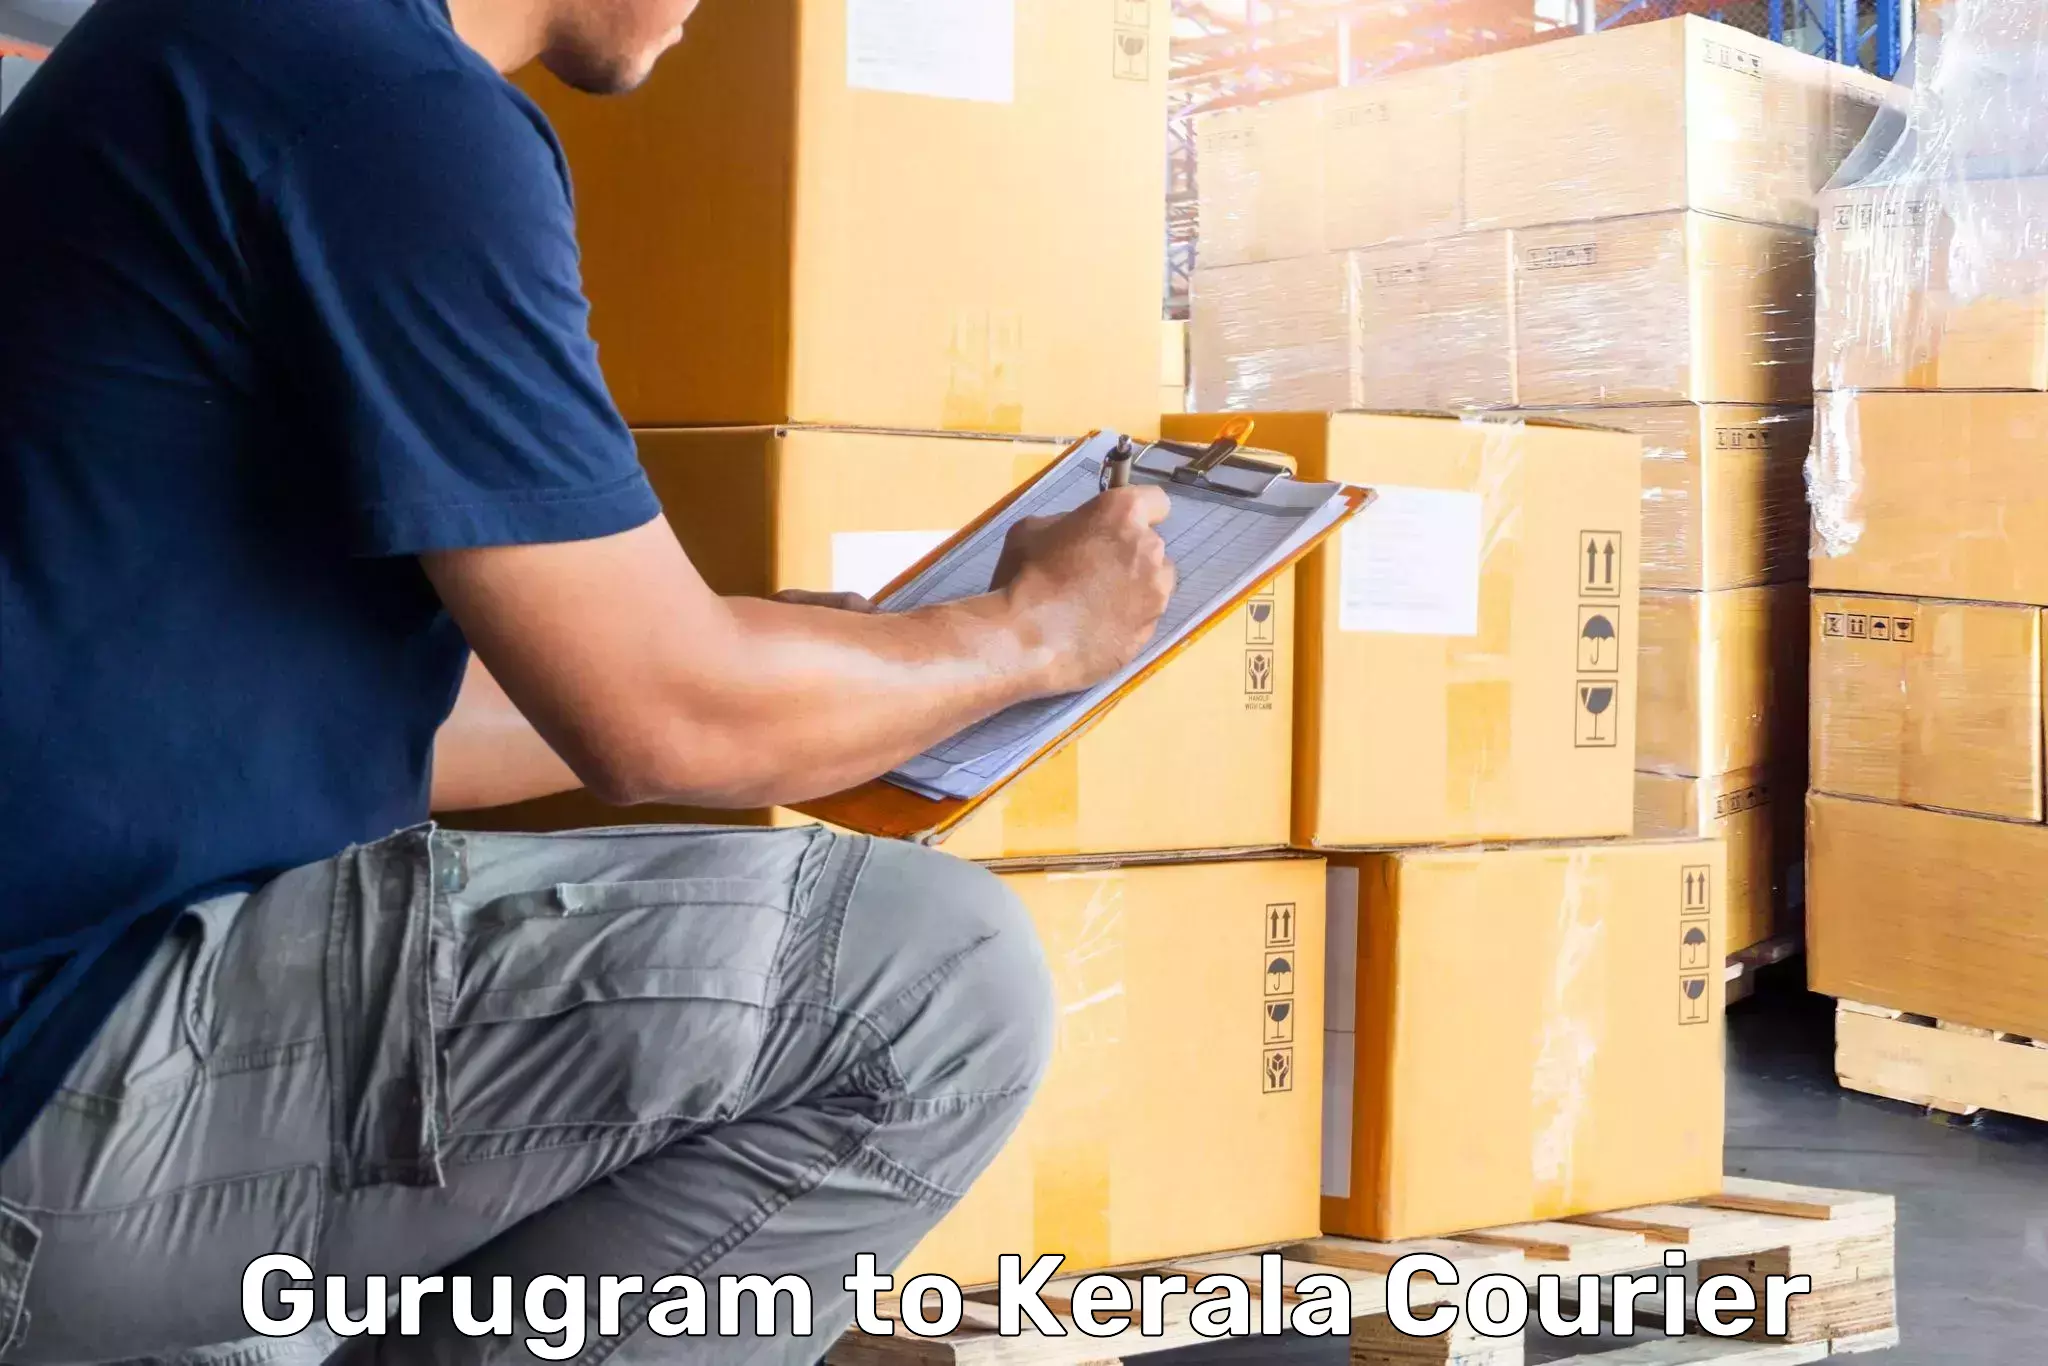 Hassle-free luggage shipping Gurugram to Angamaly